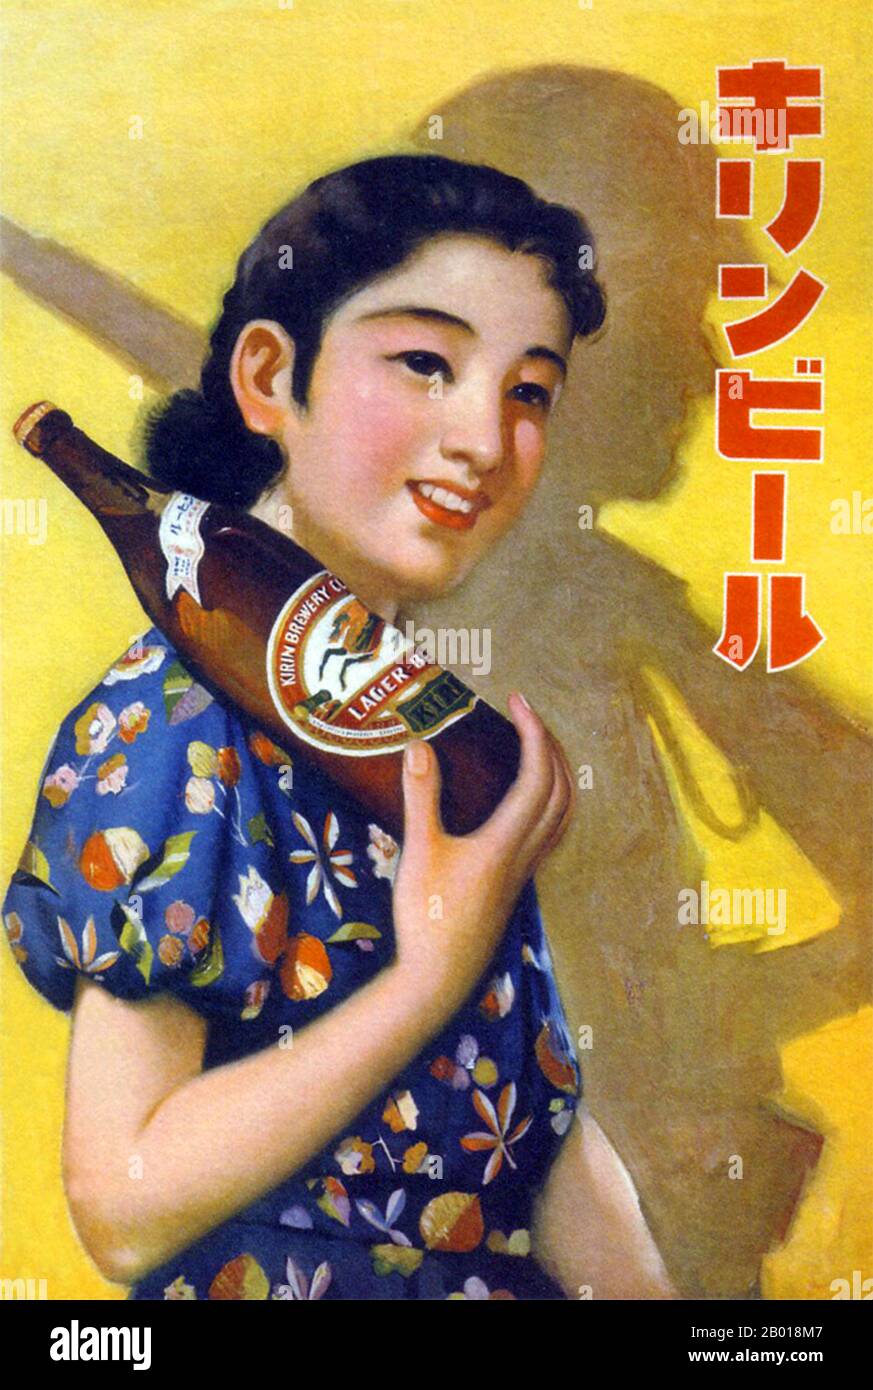 Japan: Werbeplakat für Kirin Beer, 1939. Eine Werbung für Kirin Beer aus dem Jahr 1939, die die steigende Flut von Militarismus und Faschismus in Japan verkörpert. Eine attraktive junge Frau mit einer Flasche Kirin Beer, die auf ihrer Schulter liegt, wirft den Schatten eines japanischen kaiserlichen Soldaten, dessen Waffe auf seiner Schulter ruht. Stockfoto